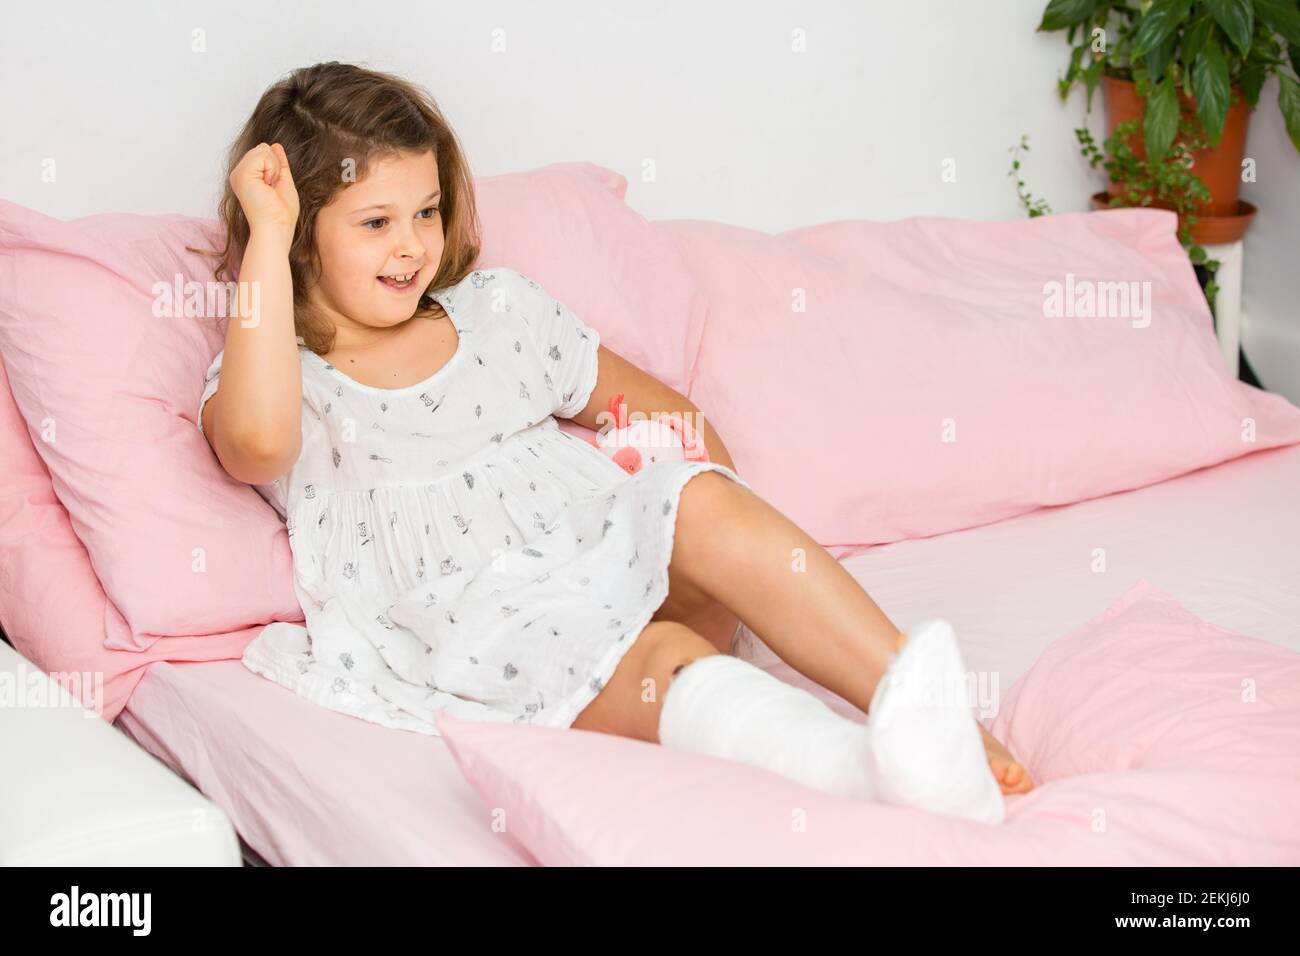 Une adolescente à l'esprit positif se trouve sur un lit dans une coulée sur sa jambe, avec une cheville cassée. La jambe de l'enfant est cassée, fracture osseuse Banque D'Images